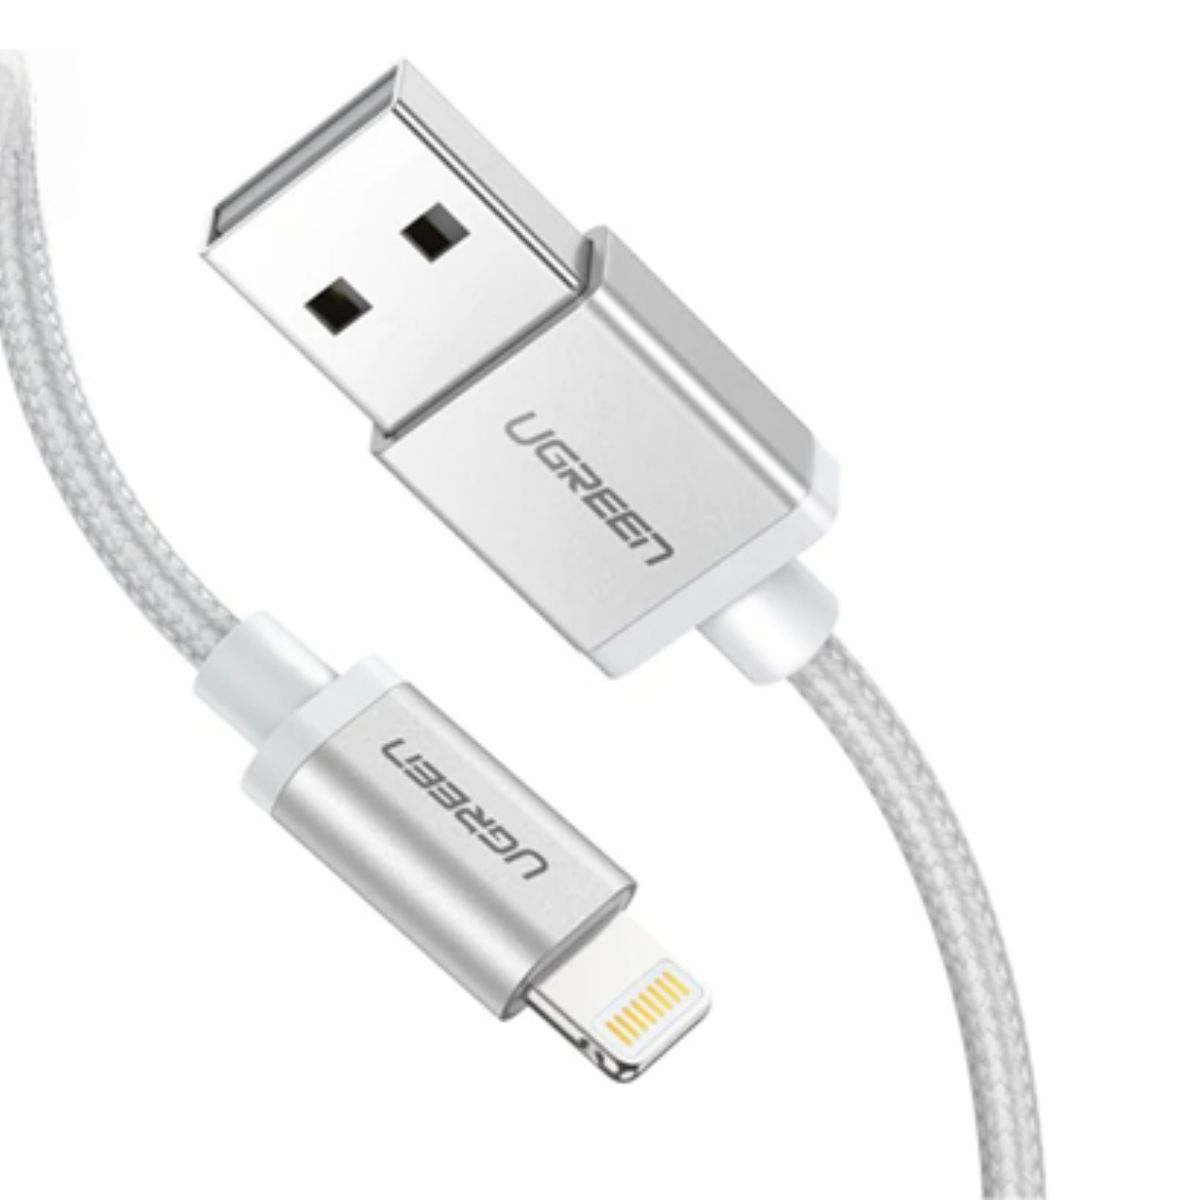 Cáp sạc nhanh USB sang Lightning Ugreen US199, 60163 chiều dài 2m, màu bạc, tốc độ truyền tải 480Mbps